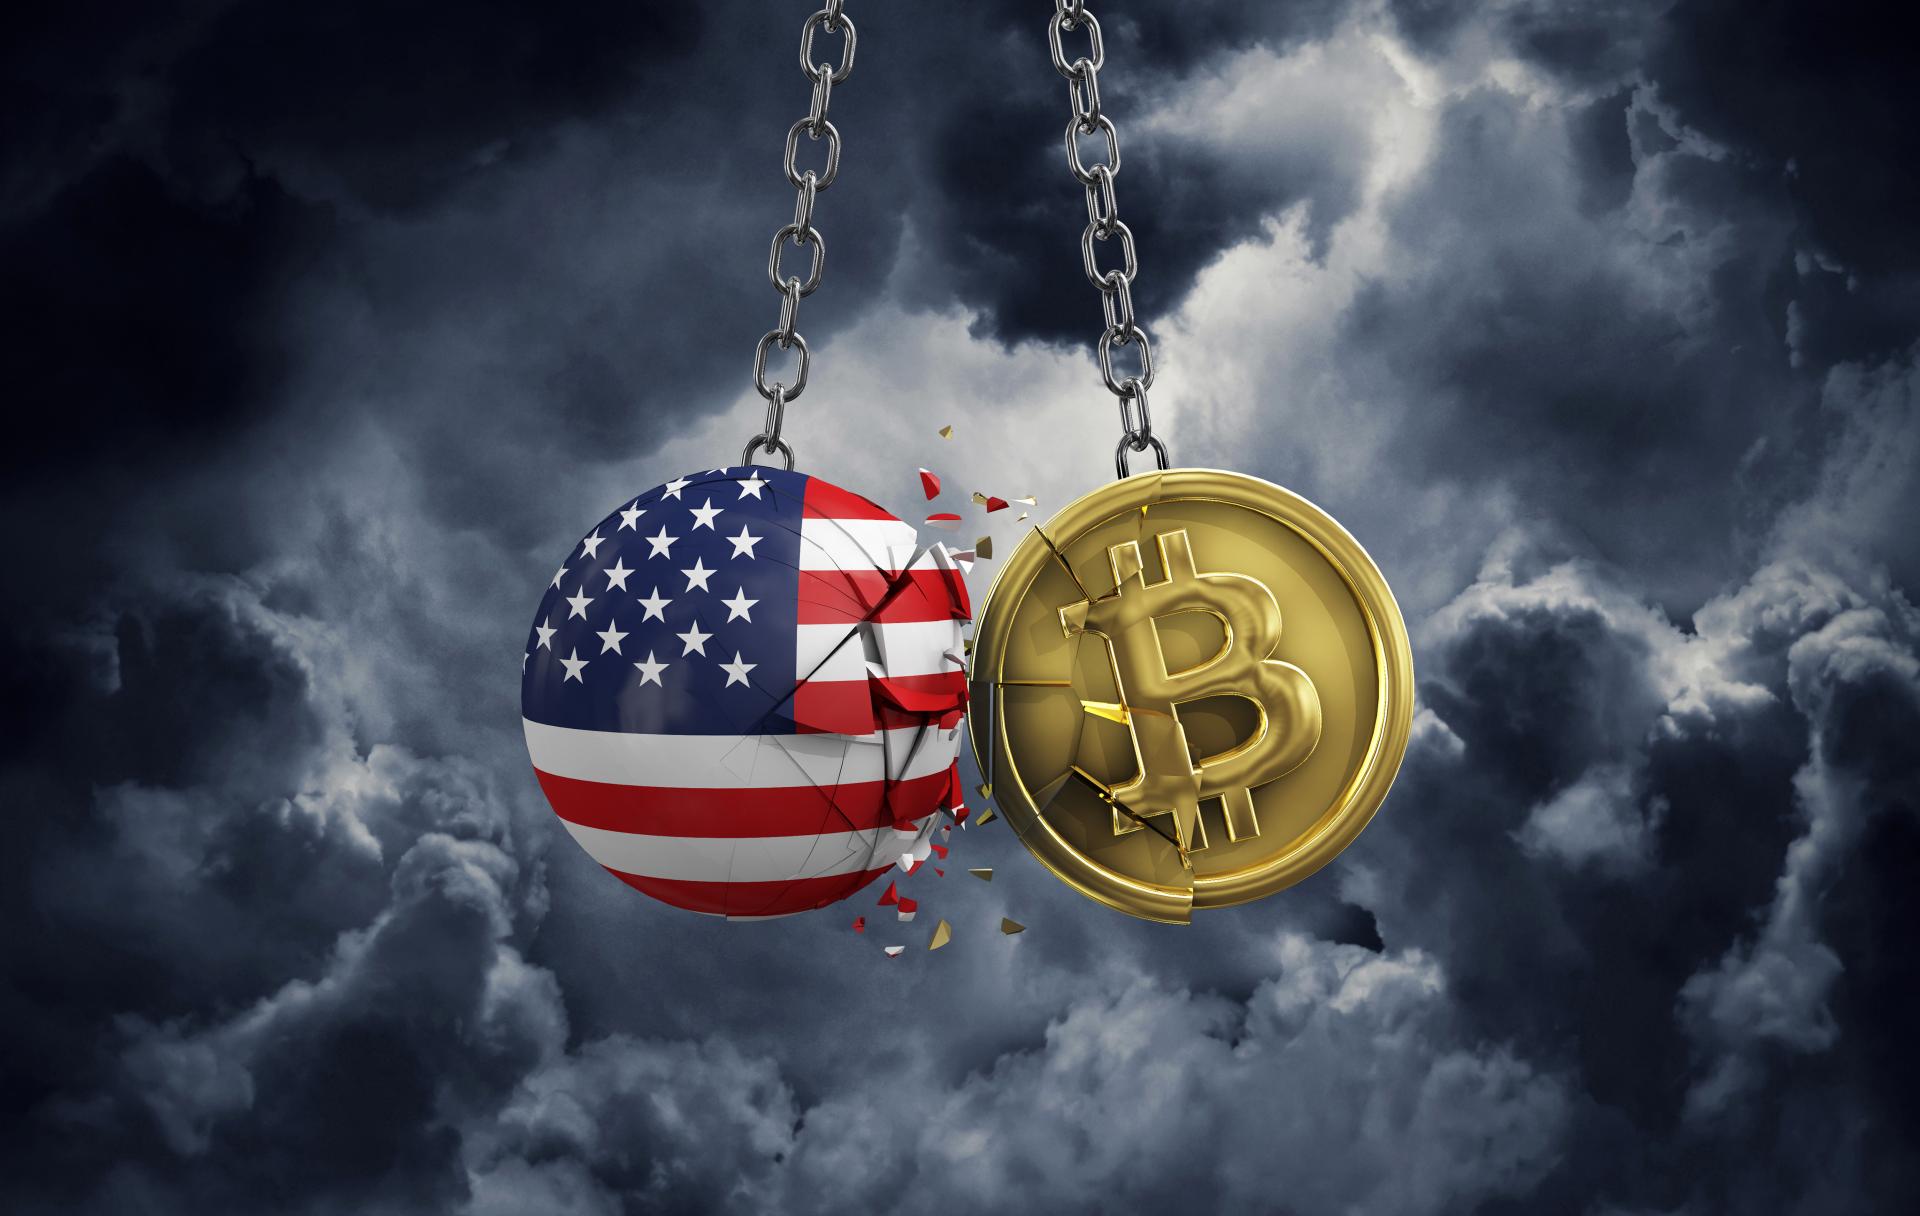 Više od 50 posto bitcoina na kripto mjenjačnicama otišlo je izvan SAD-a zbog regulatorne nesigurnosti